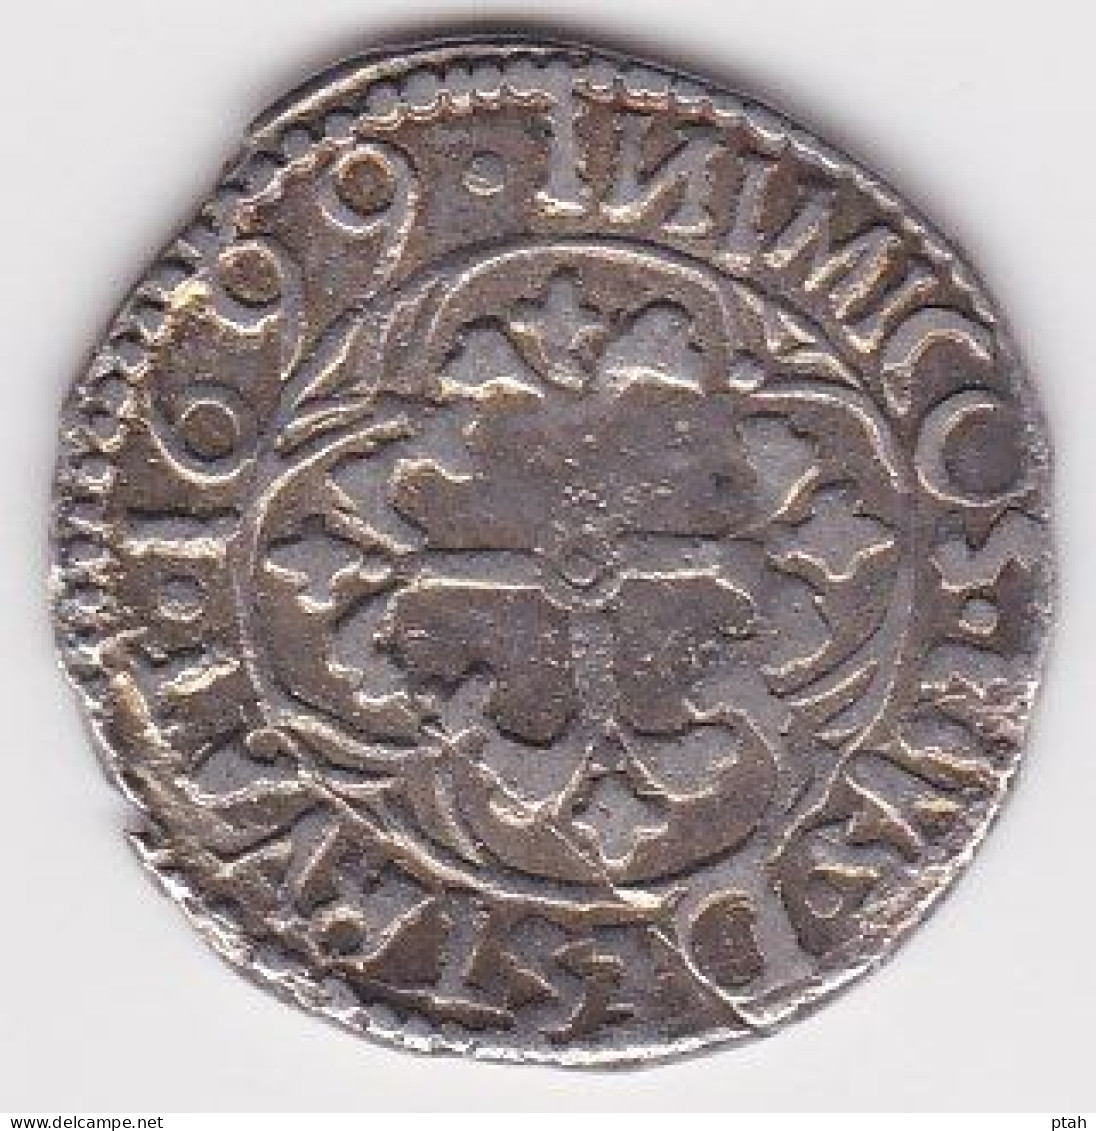 SARDINIA, Carlo II, Reale 1699 - Monete Feudali